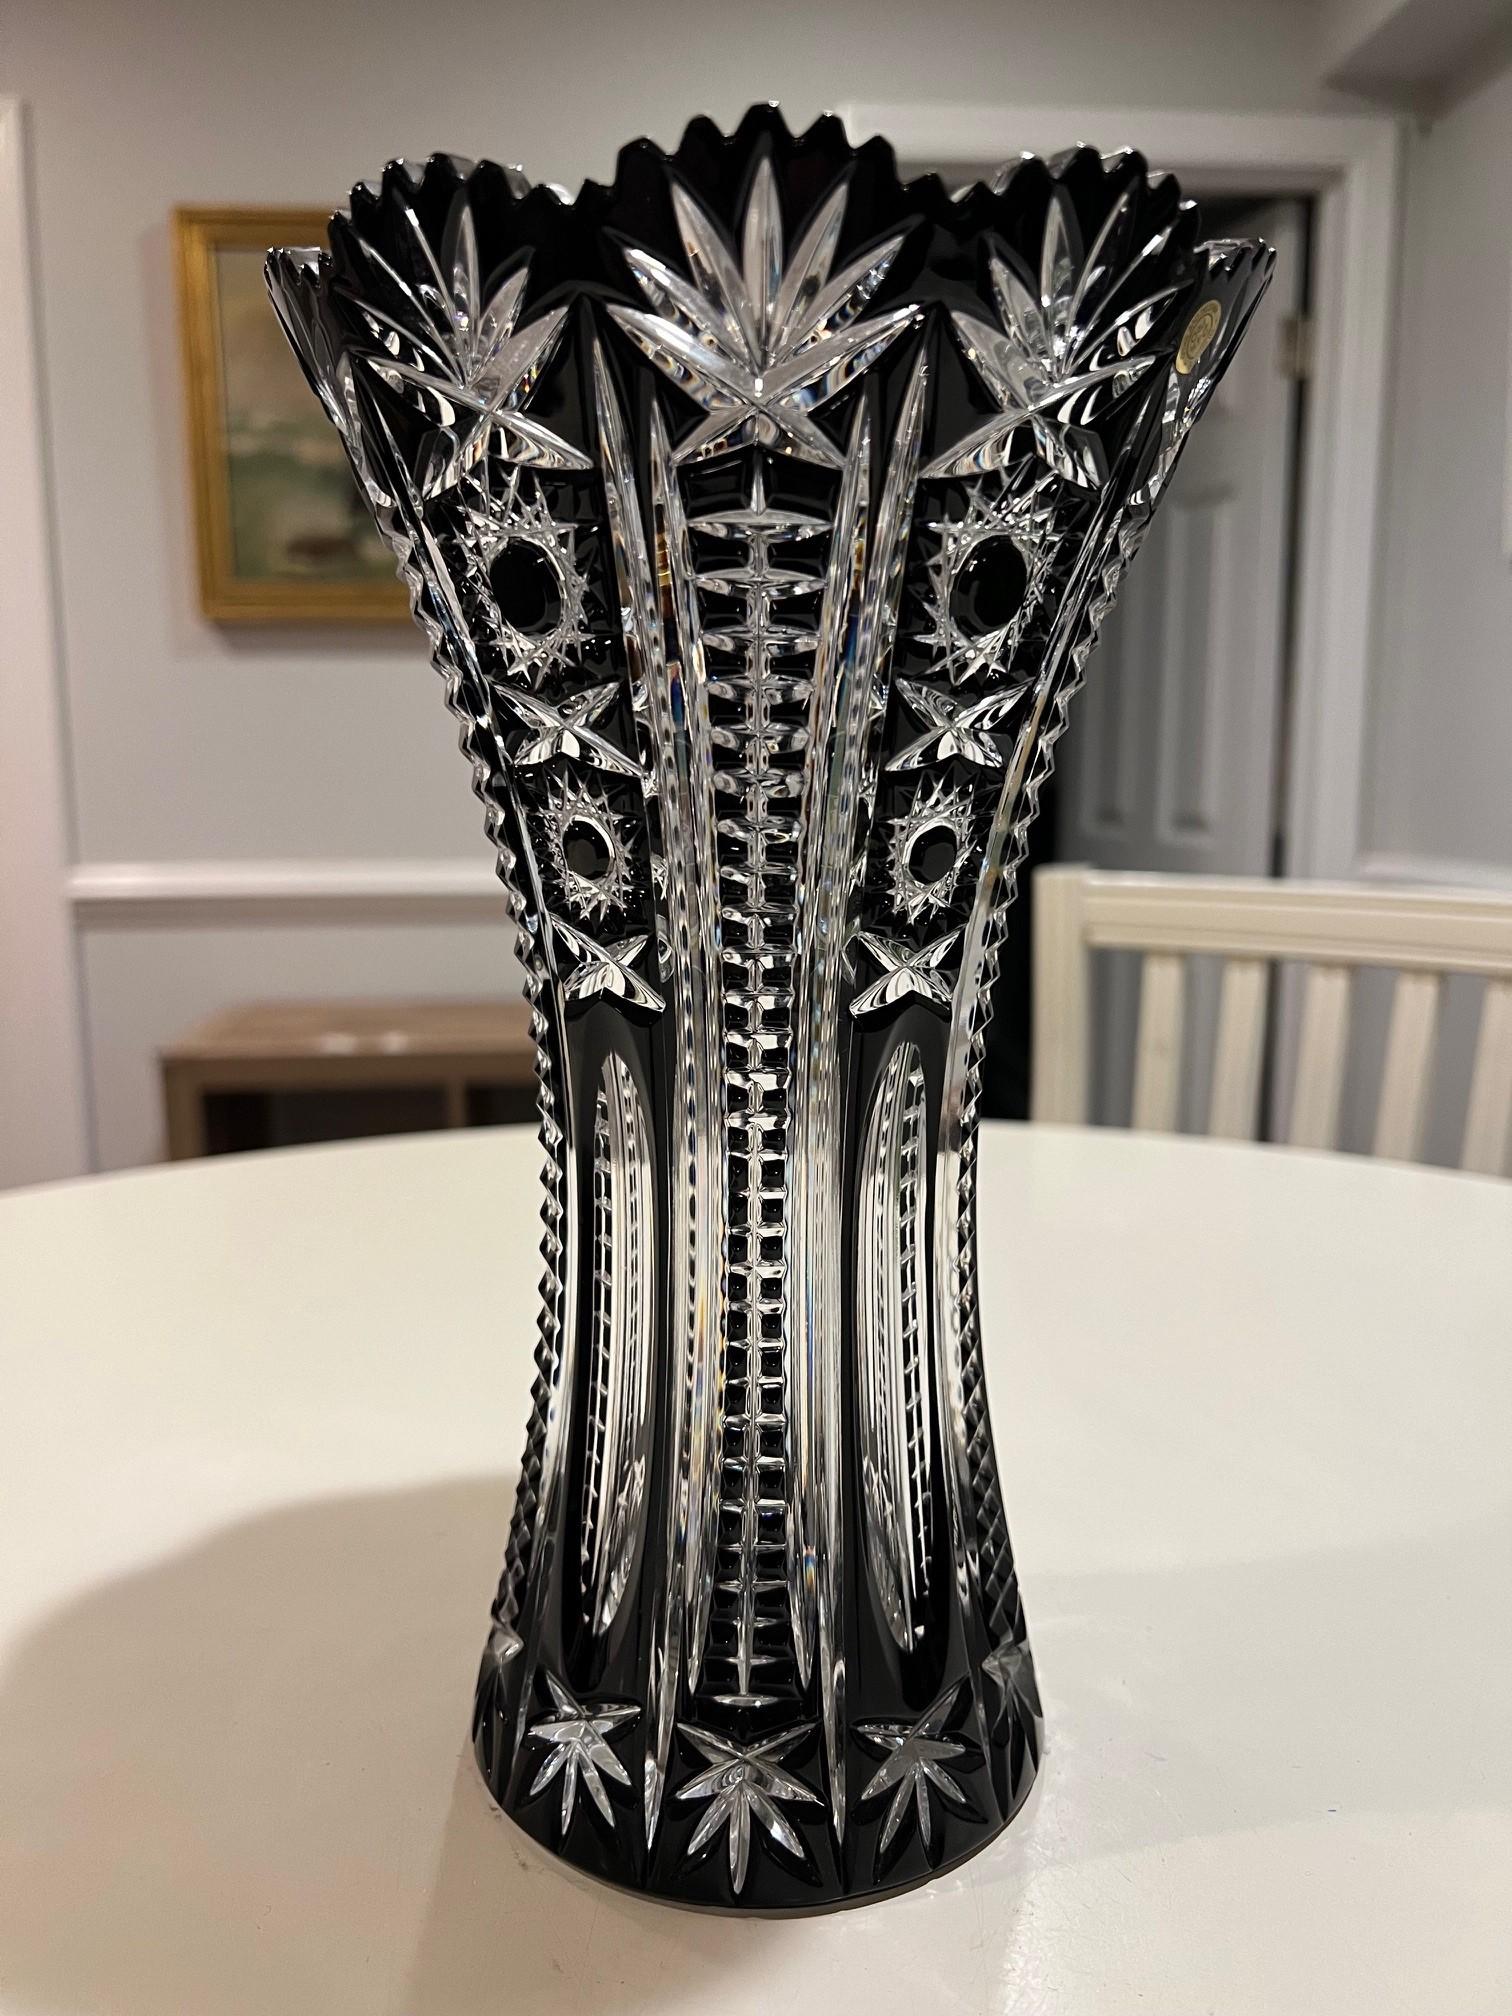 Atemberaubende schwarze Vase aus handgeschliffenem Bleikristall, die von den besten tschechischen Glasmachern als Kunstwerk geschaffen wurde. Die Caesar Crystal Company in der Tschechischen Republik vertreibt seit 1861 handgeschliffene